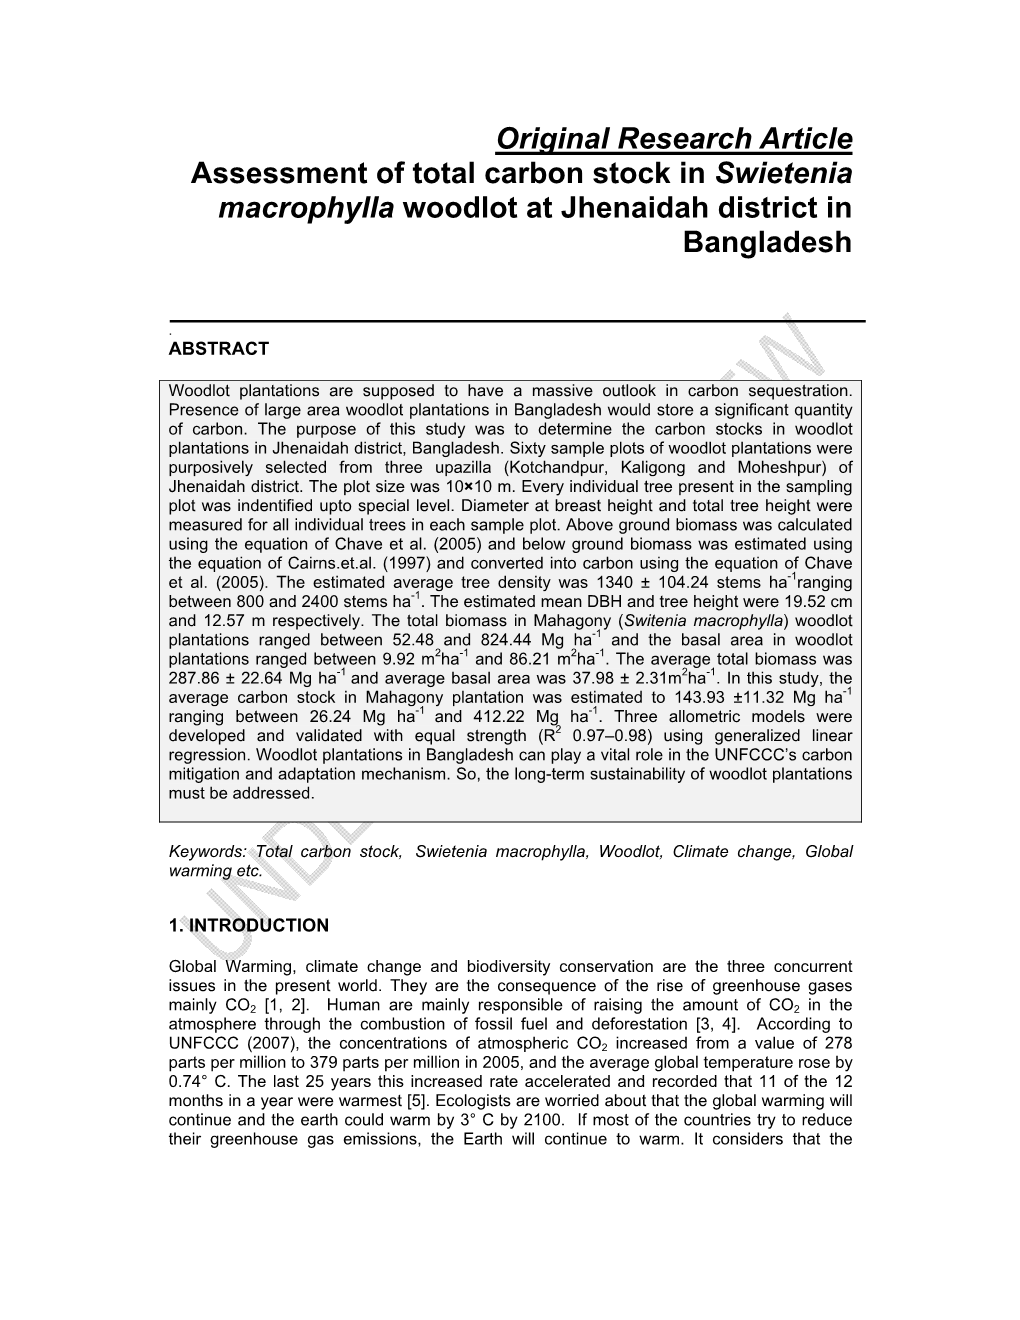 Original Research Article Assessment of Total Carbon Stock in Swietenia Macrophylla Woodlot at Jhenaidah District in Bangladesh